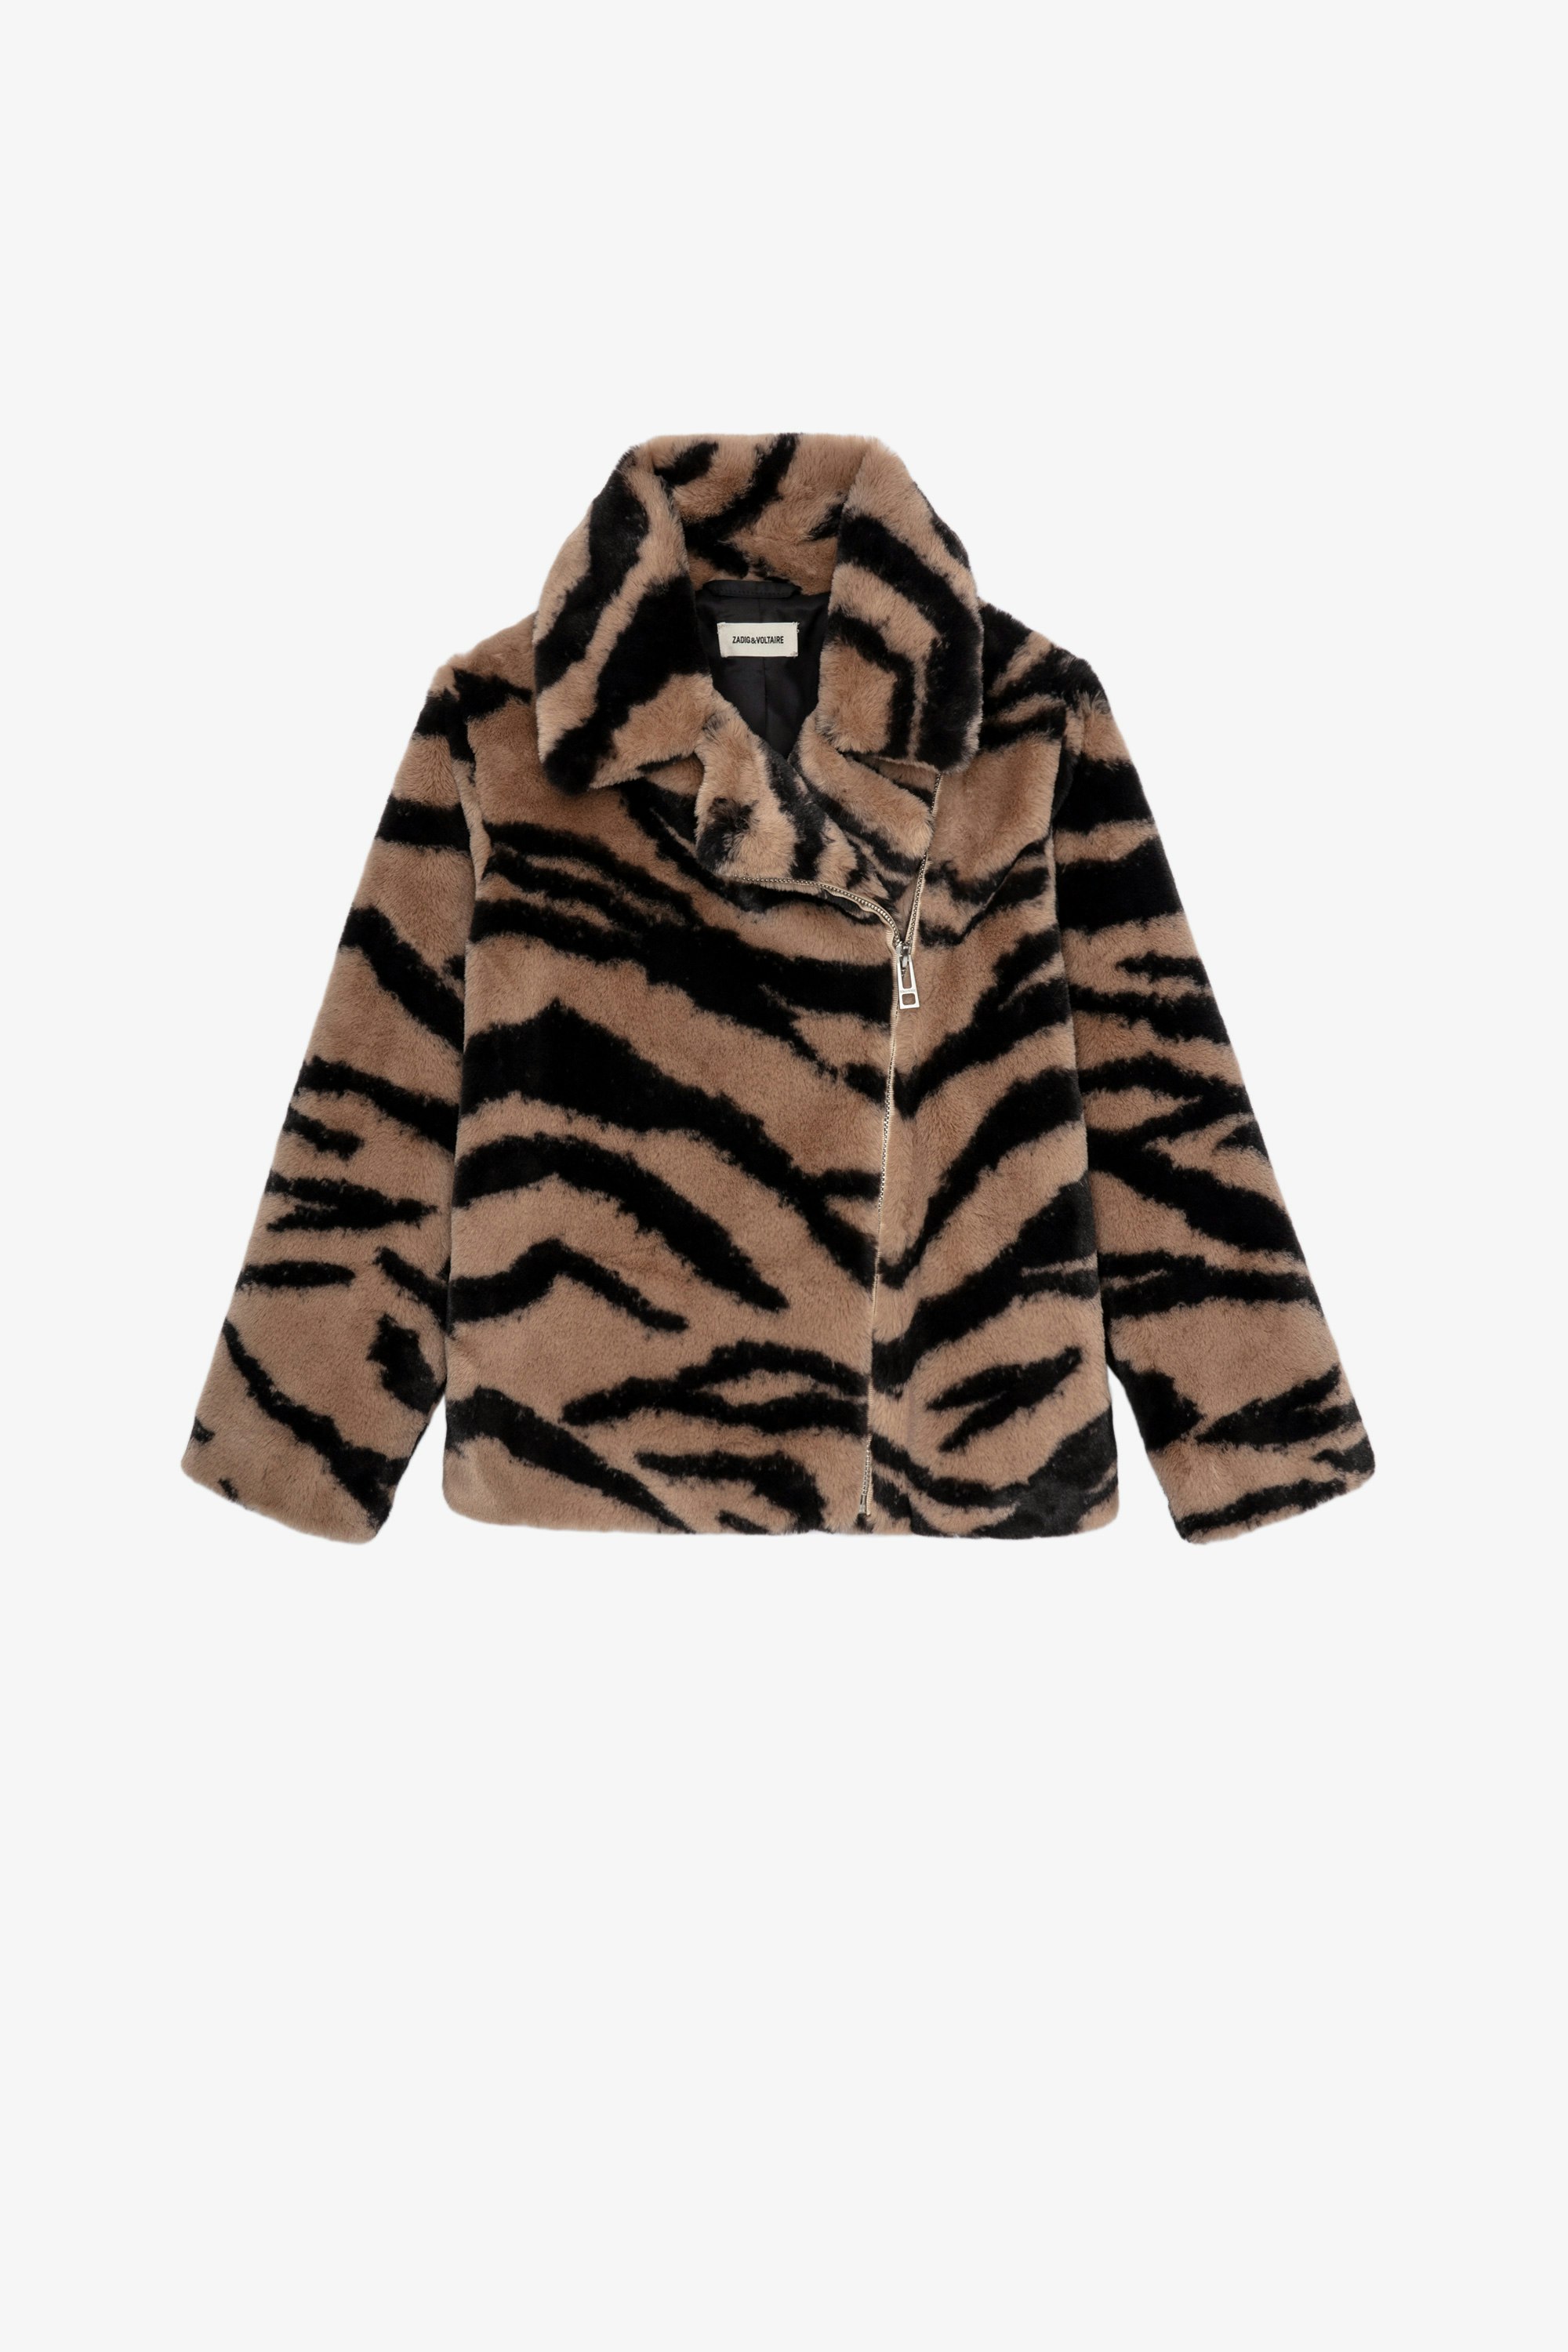 Madeleine Children’s コート Children’s leopard-print coat with revered collar and button fastening 